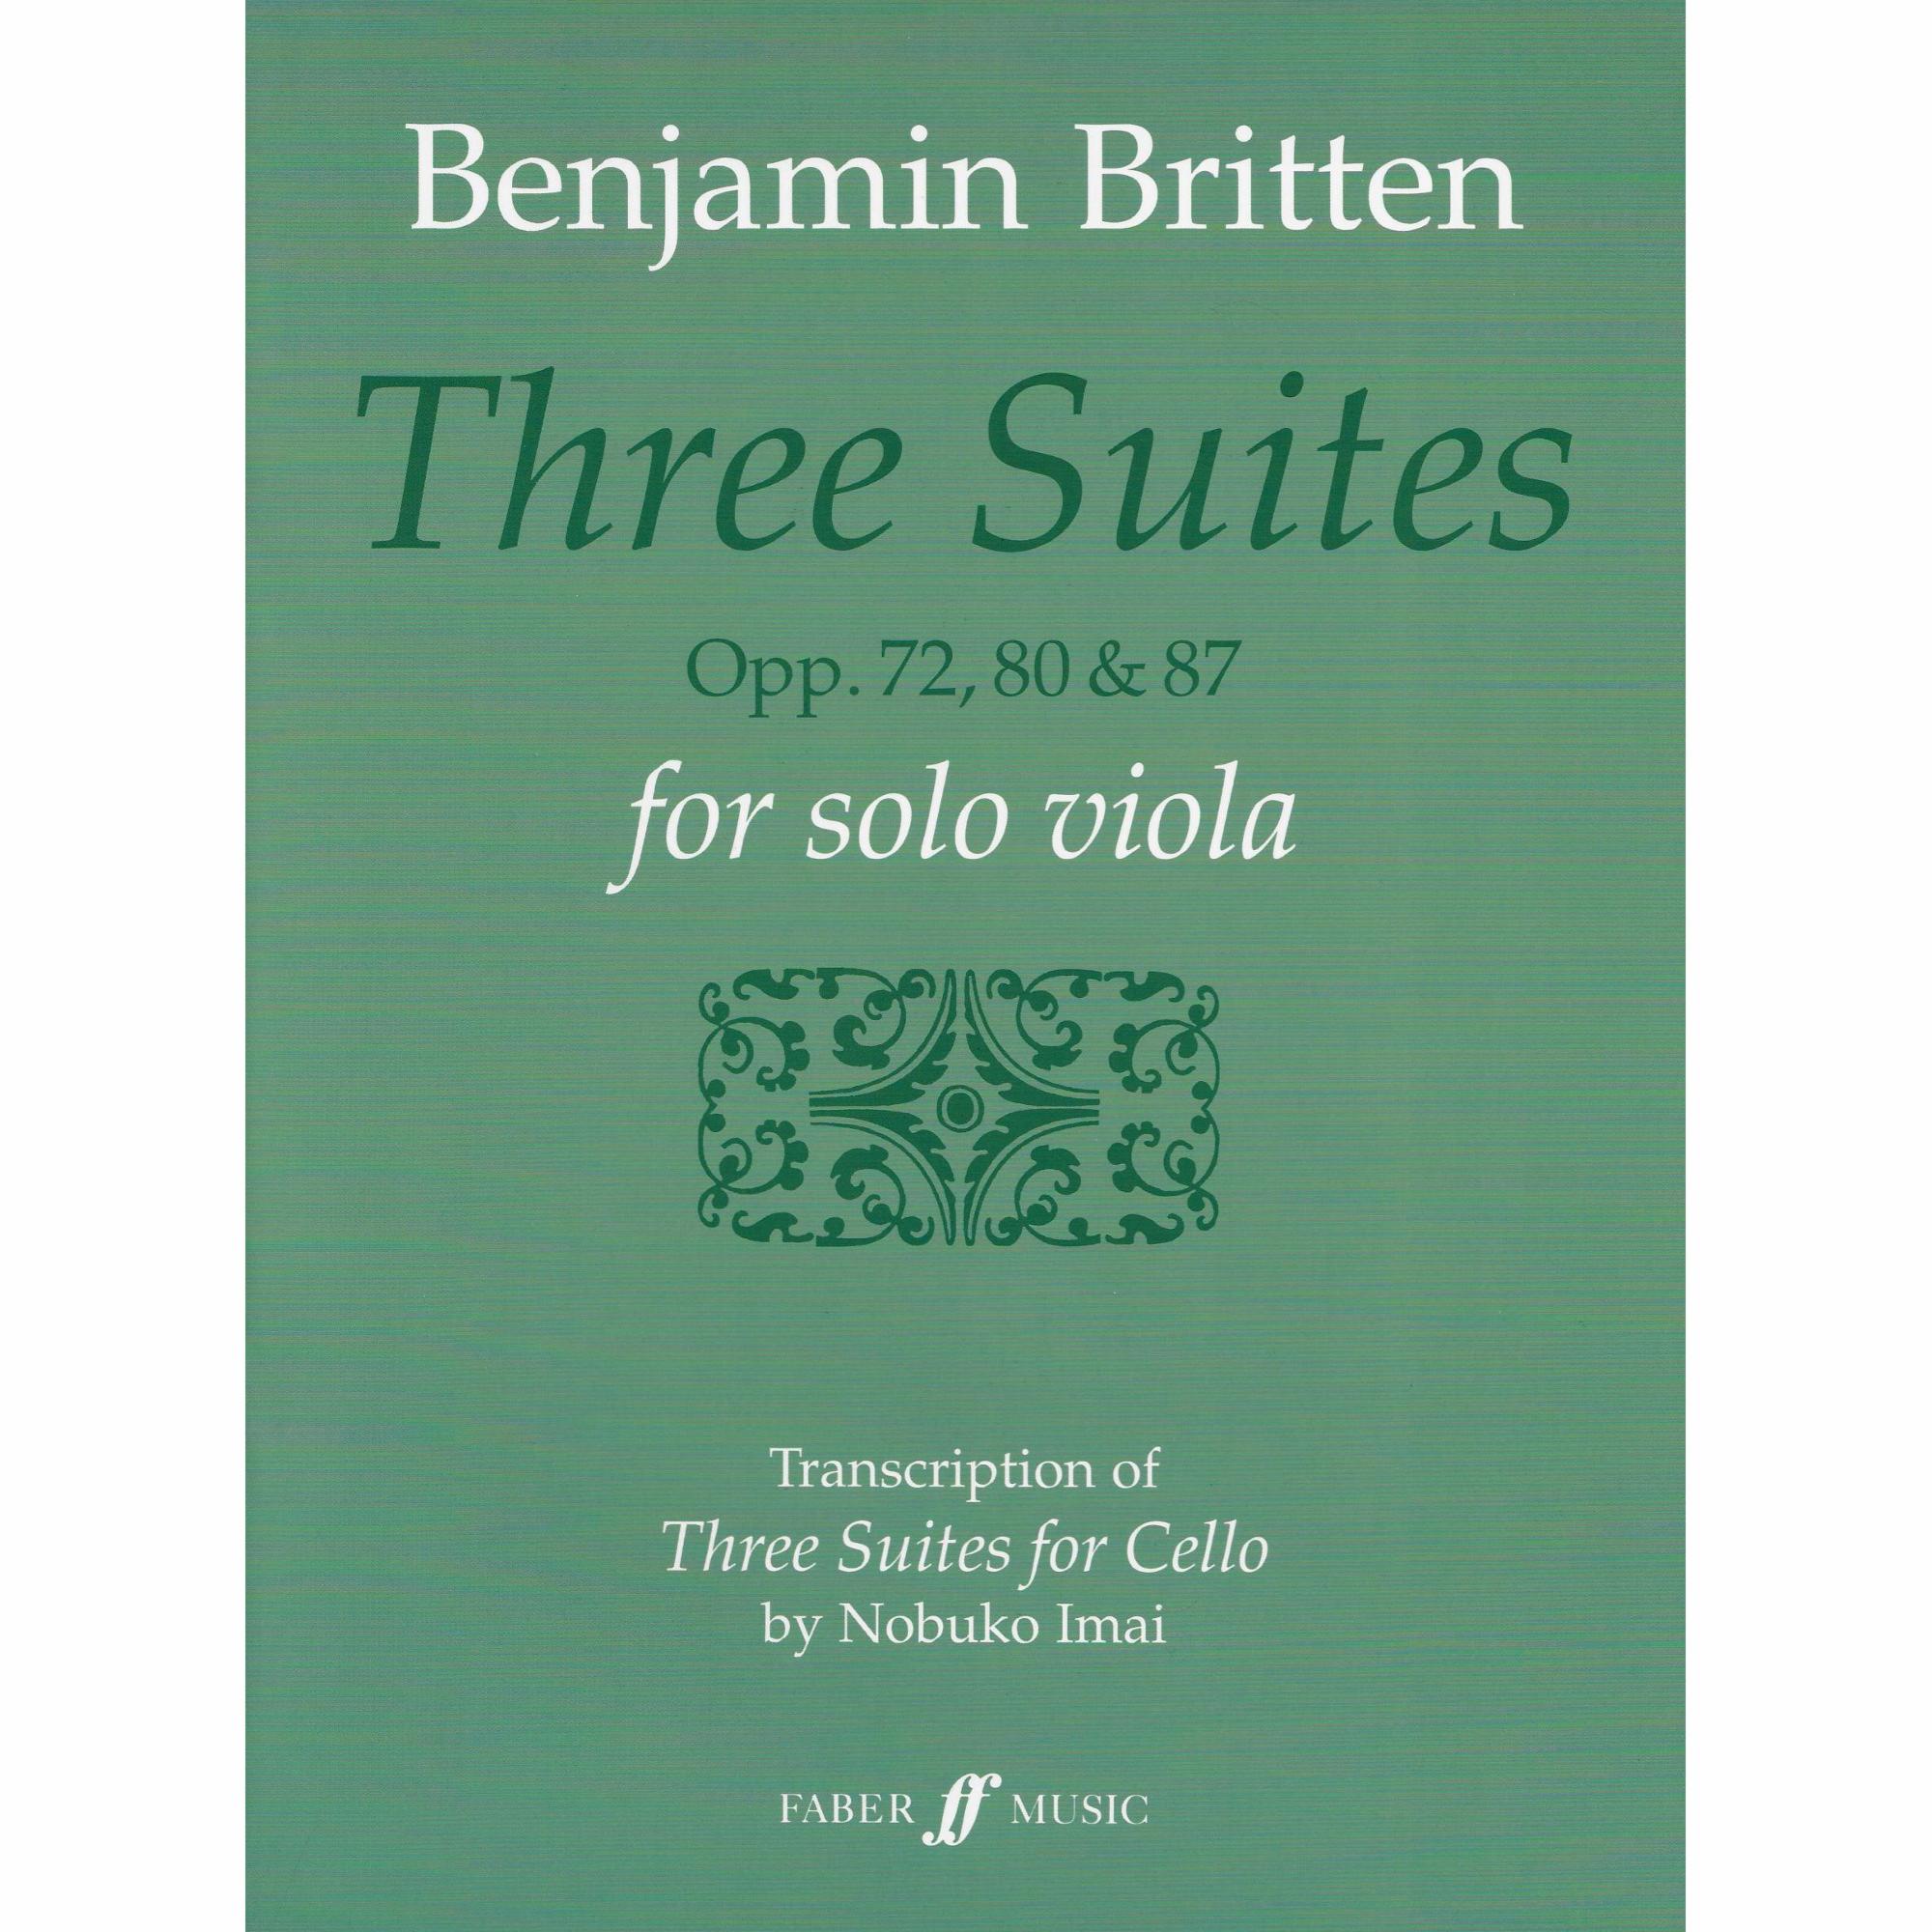 Britten -- Three Suites, Opp. 72, 80 & 87